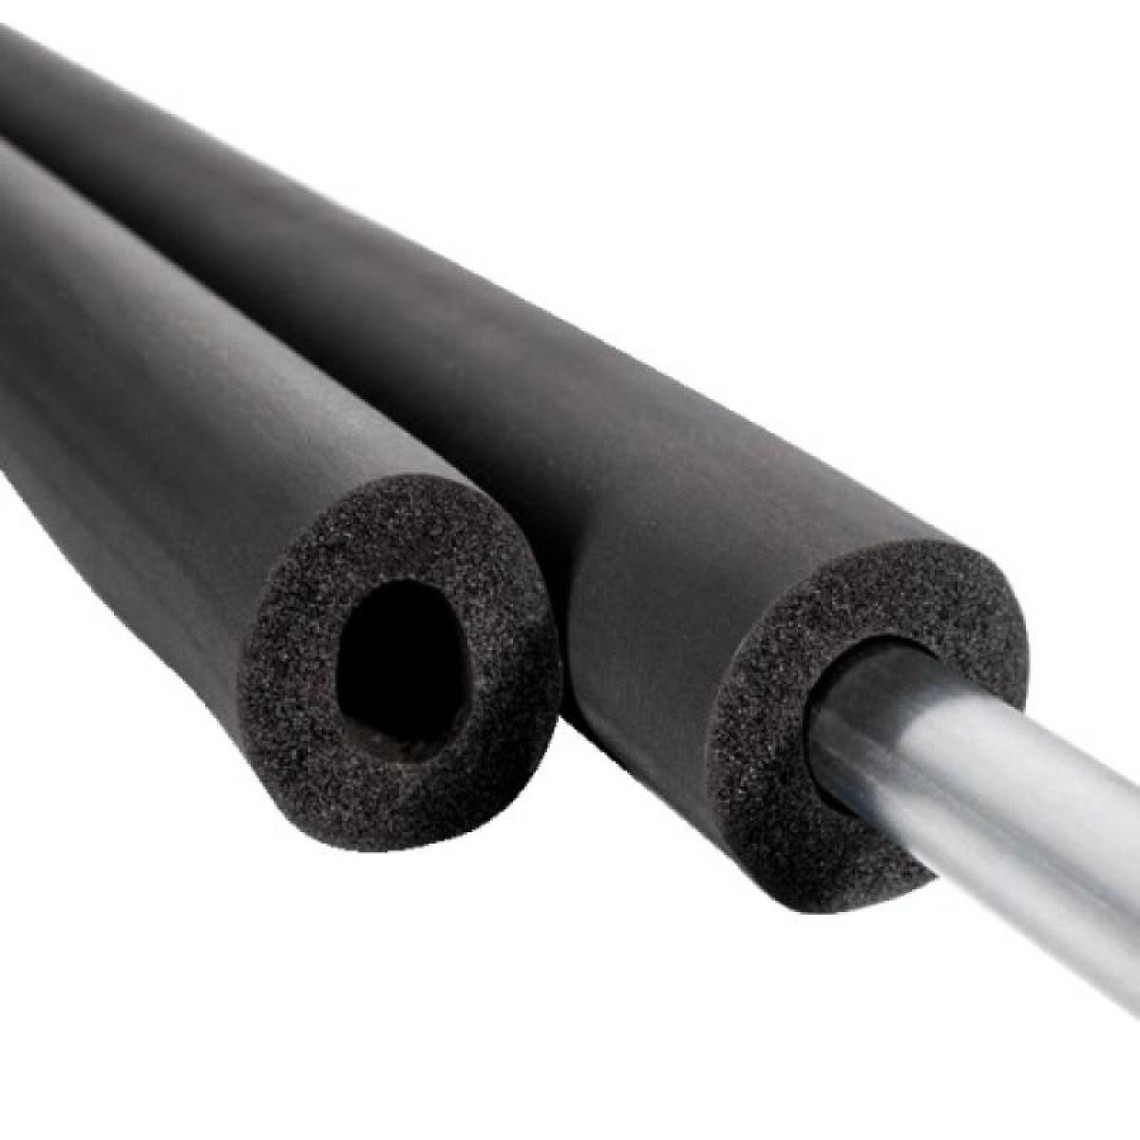 Tous types d'isolants et laine de verre NMC Tubes isolants non fendus Insul Tube épaisseur 32 mm pour tube Ø54mm longueur 2m